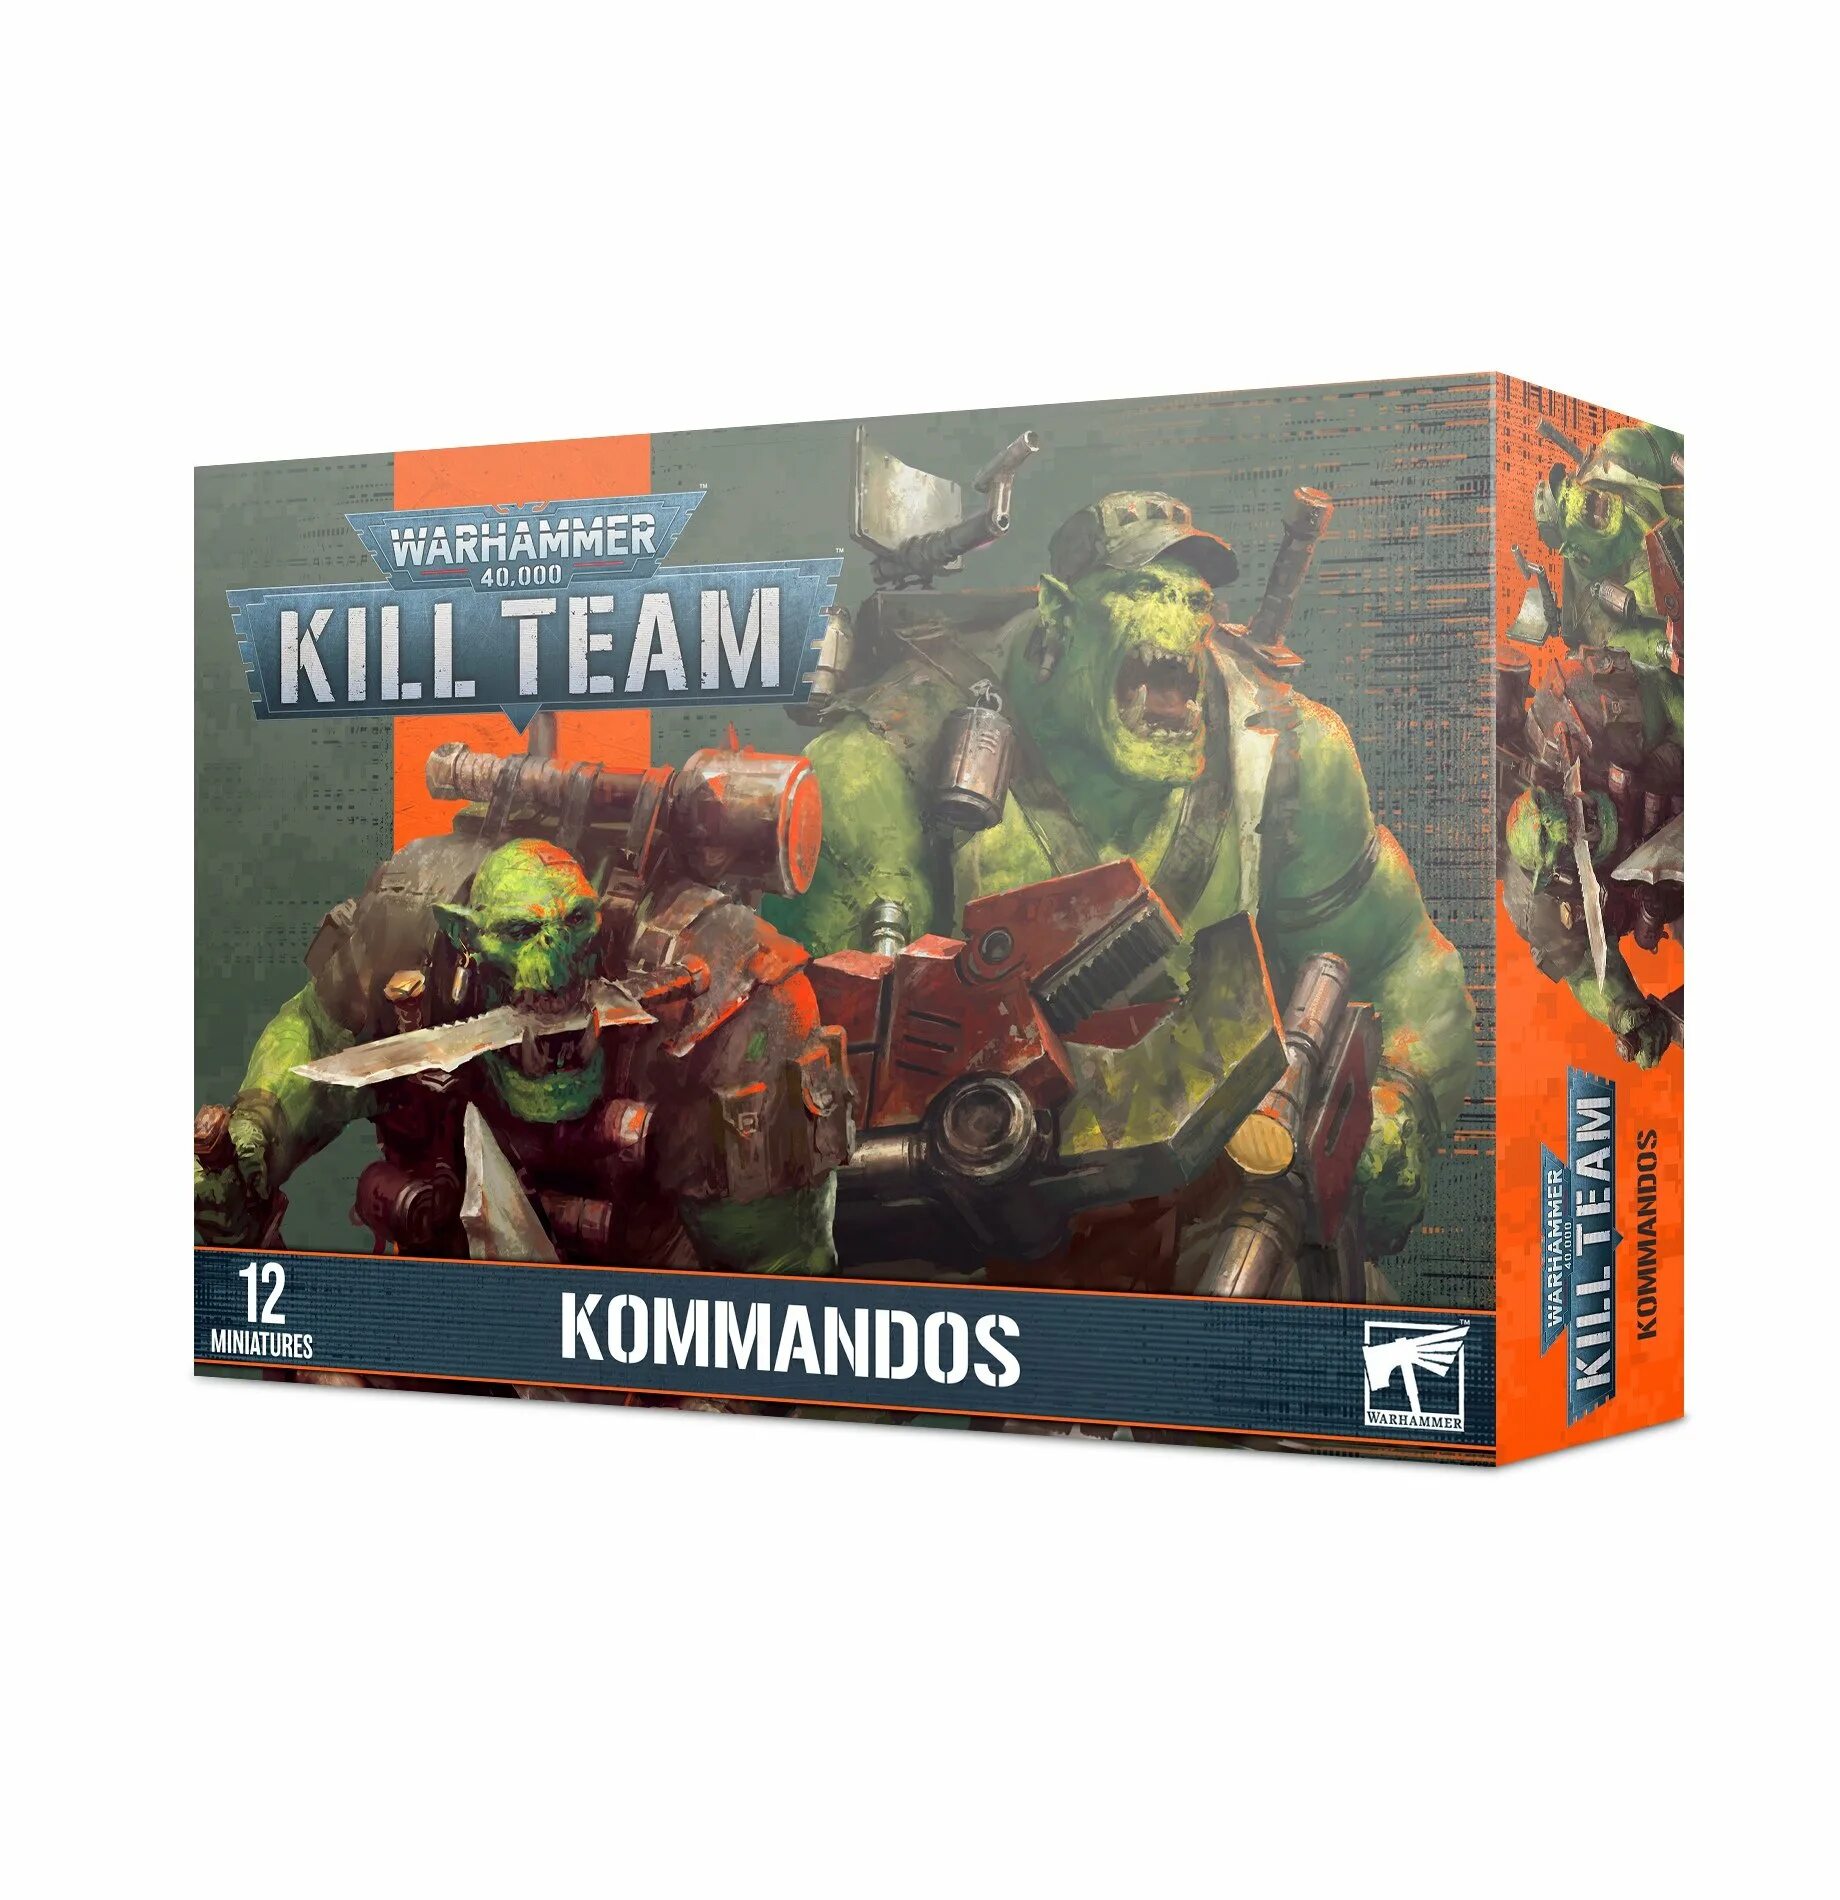 Ork Kommandos Kill Team Octarius. Kill Team Starter Set. Kill Team линейка. Warhammer 40,000: Kill Team. Kill complete